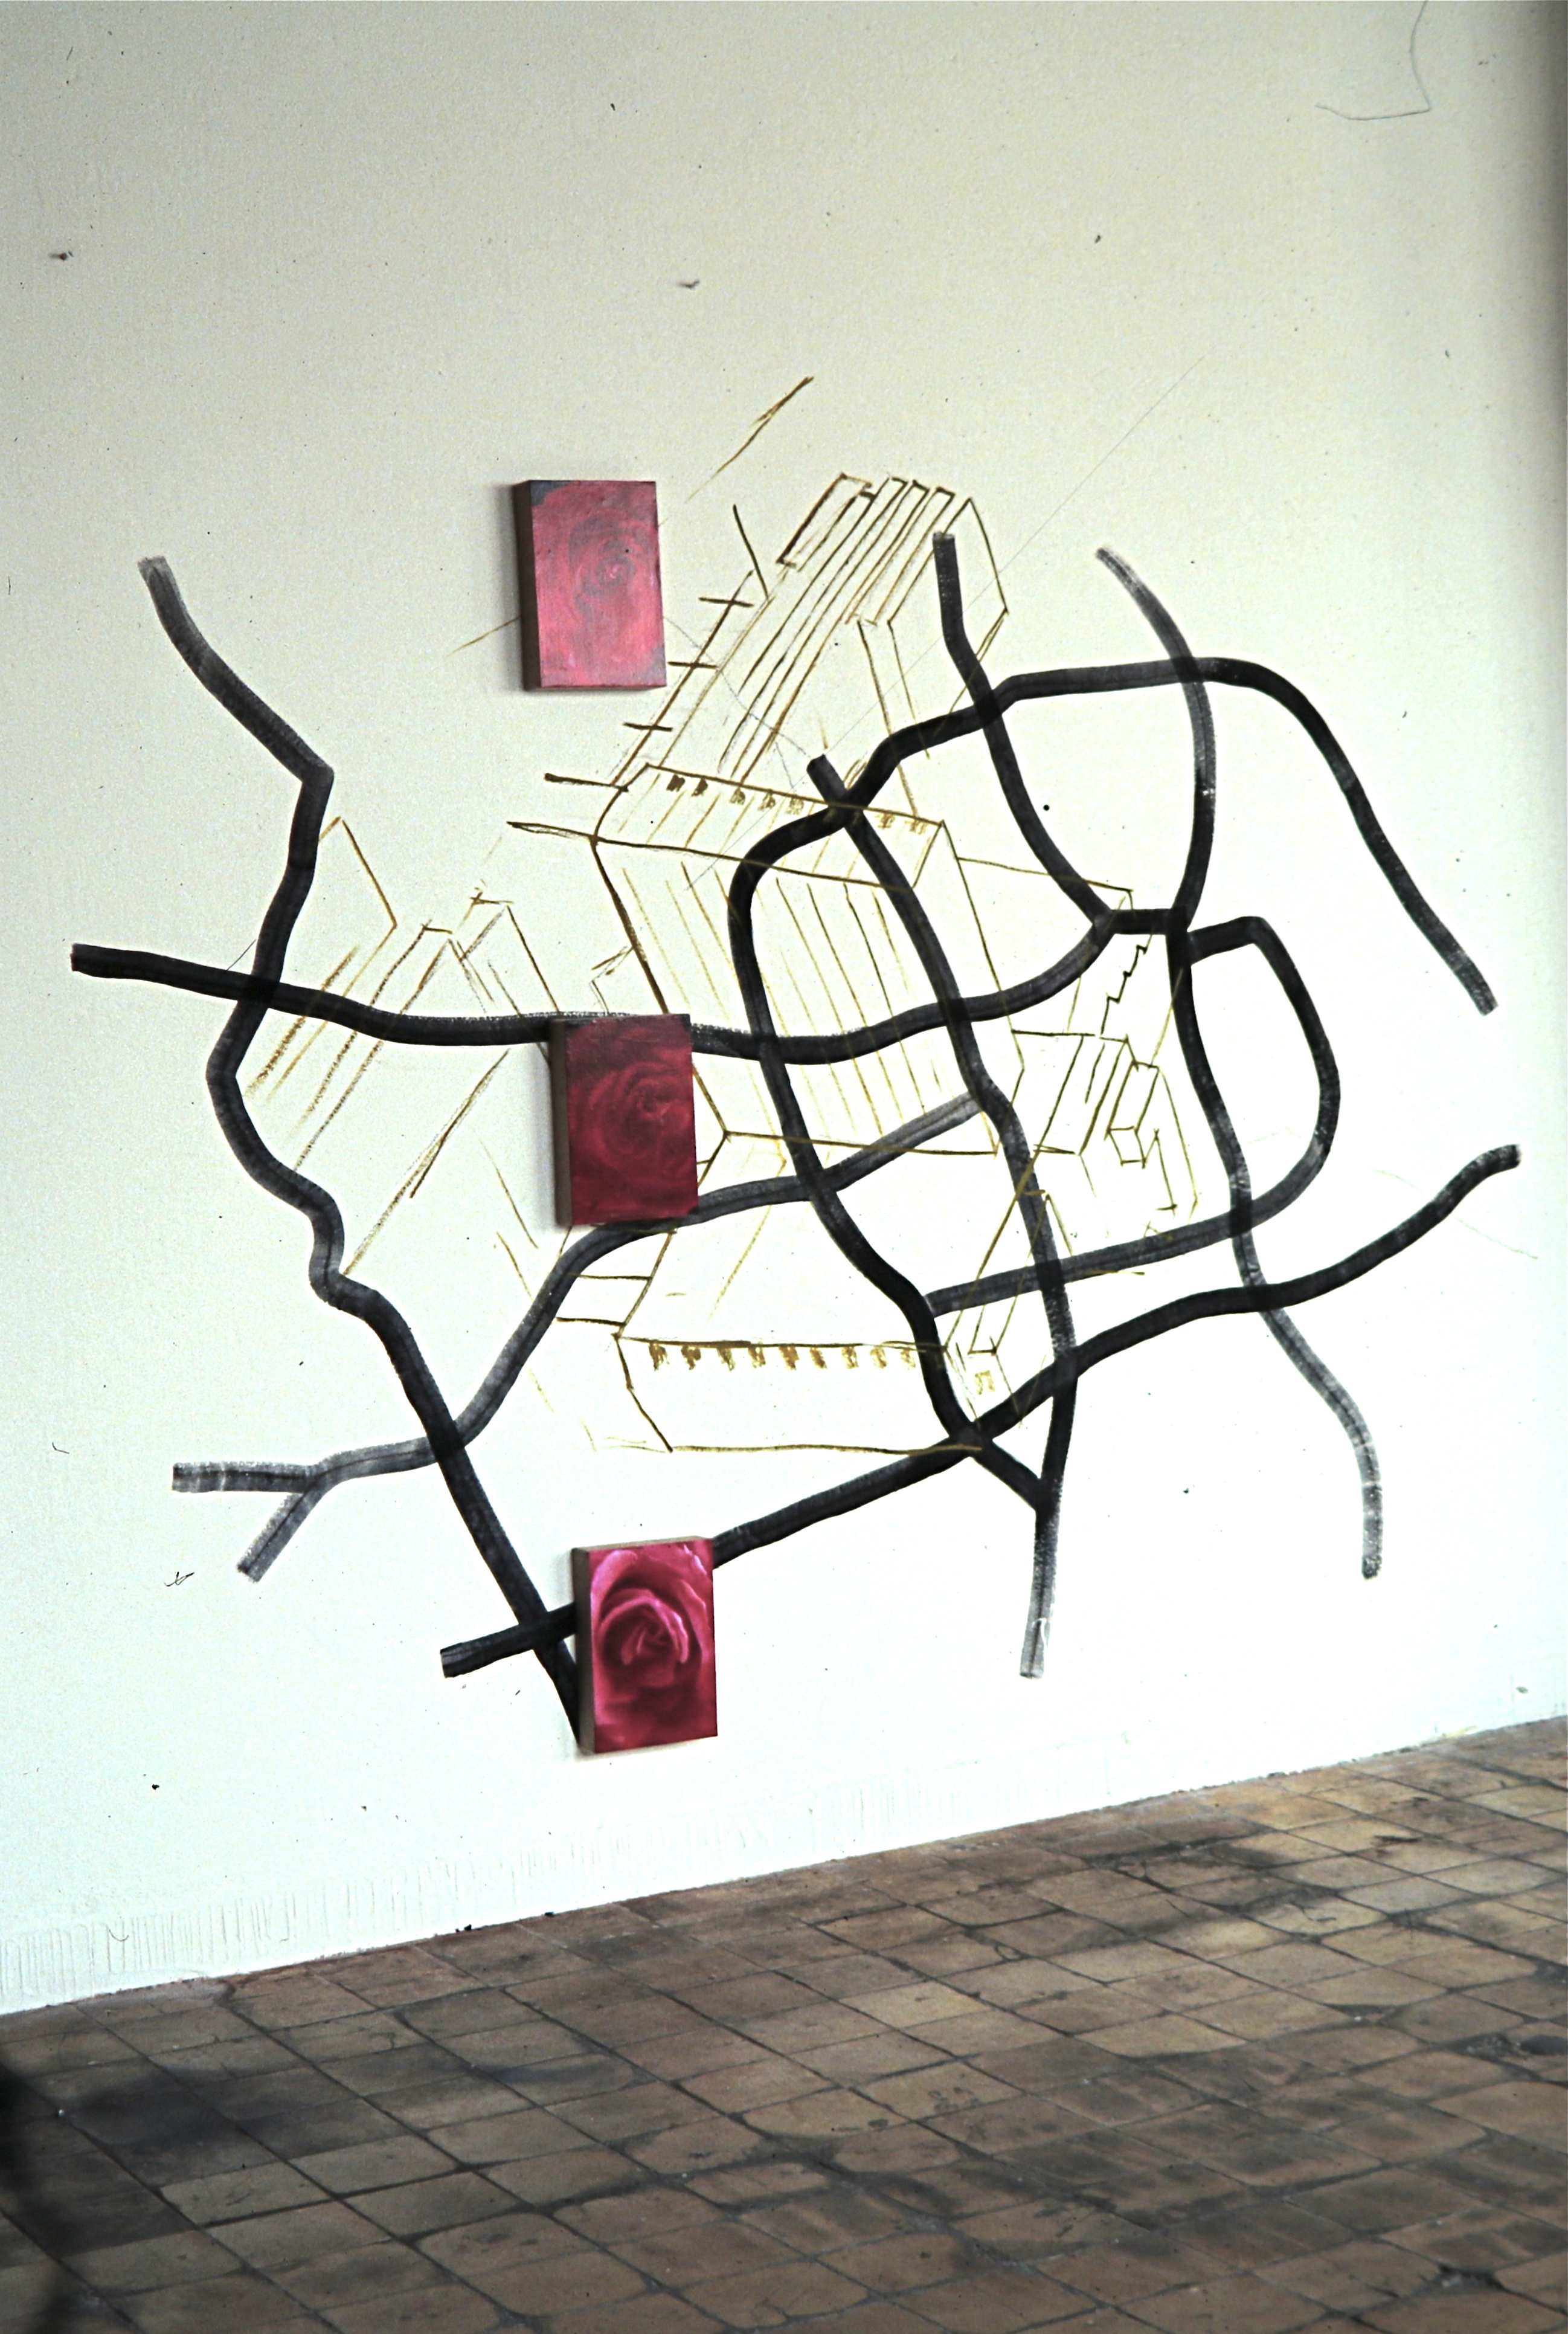 Wandarbeit 2, Wandmalerei, Fotokopie auf Leinwand, 1991/92, Erwin Holl